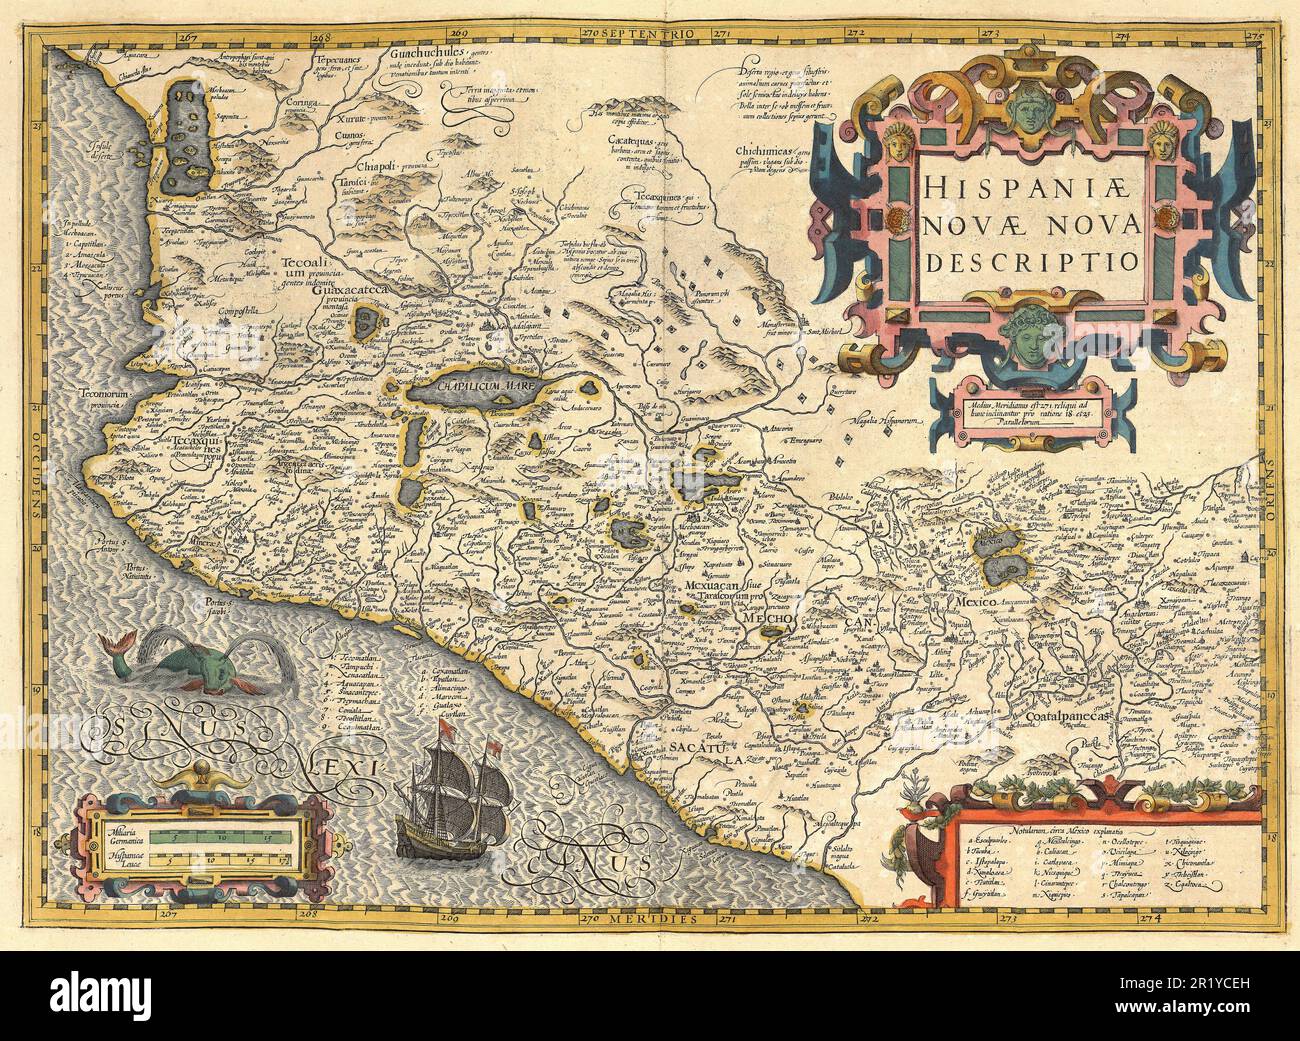 Atlas, map from 1623, Viceroyalty of New Spain, (1535-1822) in Latin America, digitally restored reproduction from an engraving by Gerhard Mercator, born as Gheert Cremer, March 5, 1512 - December 2, 1594, geographer and cartographer  / Landkarte aus dem Jahre 1623,  Vizekönigreich Neuspanien, (1535–1822) in Lateinamerika, digital restaurierte Reproduktion von einem Kupferstich von Gerhard Mercator, geboren als Gheert Cremer, 5. März 1512 - 2. Dezember 1594, Geograph und Kartograf Stock Photo